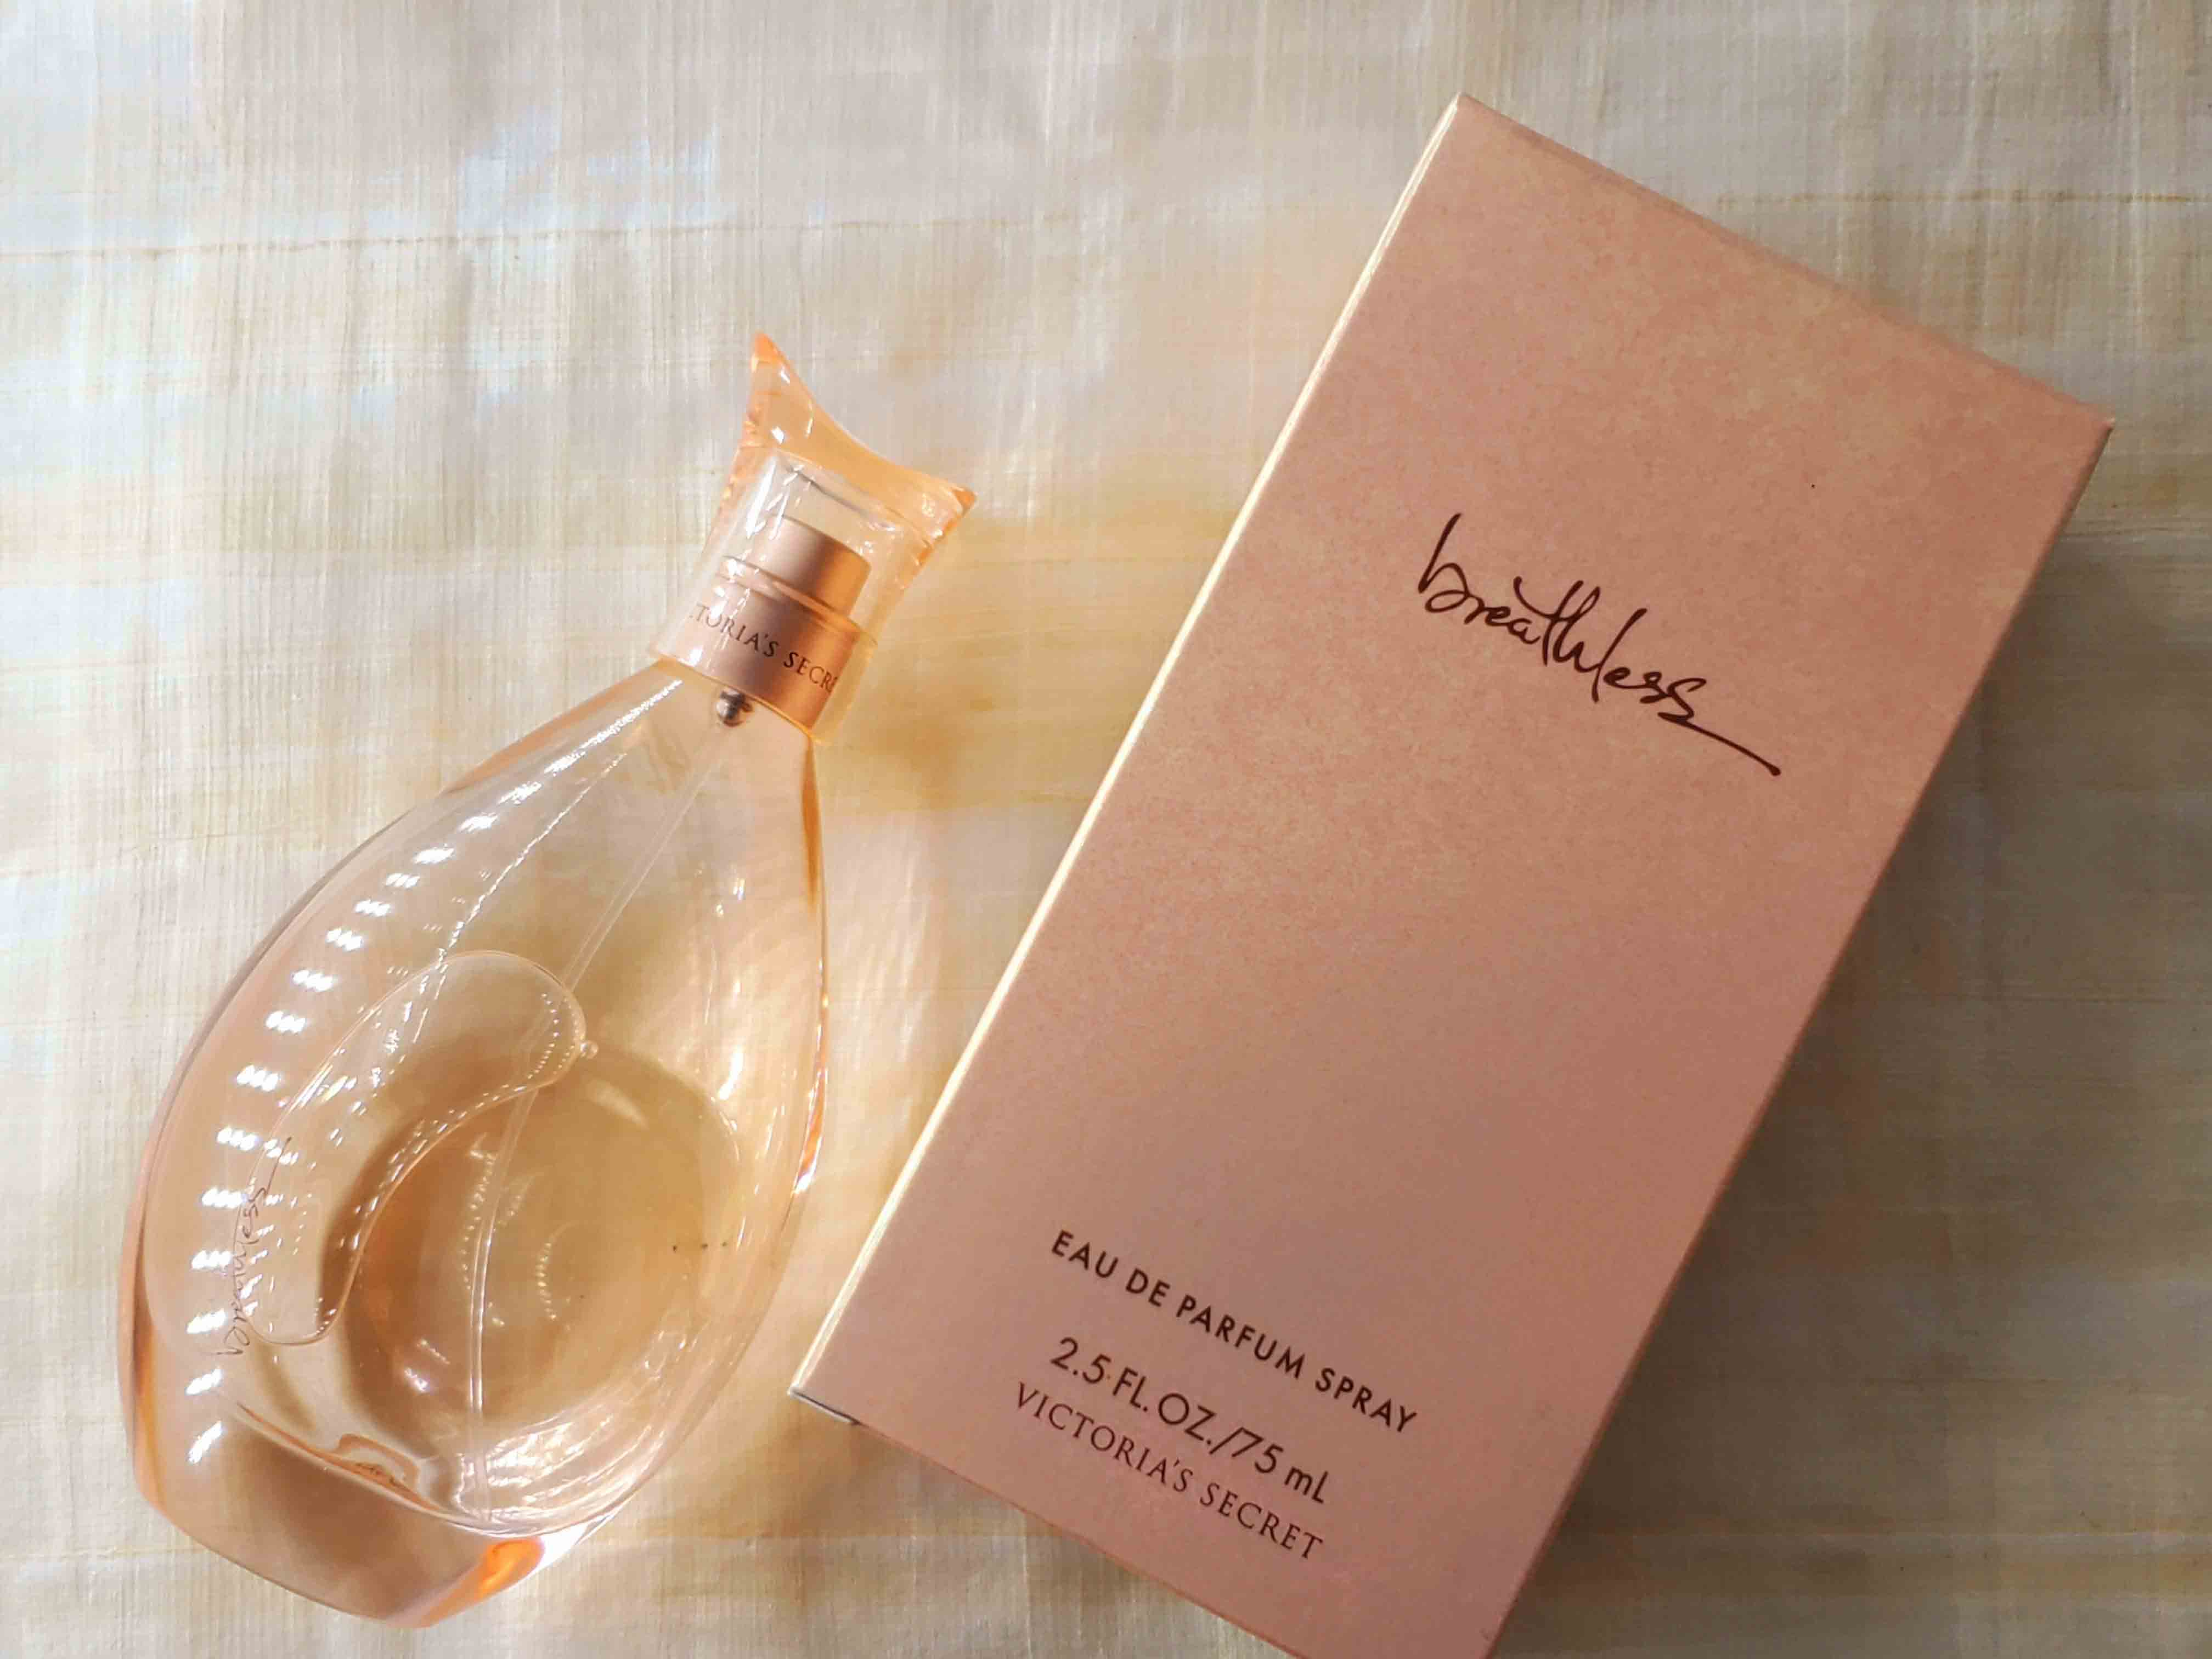  Breathless by Victoria's Secret Eau De Parfum Spray